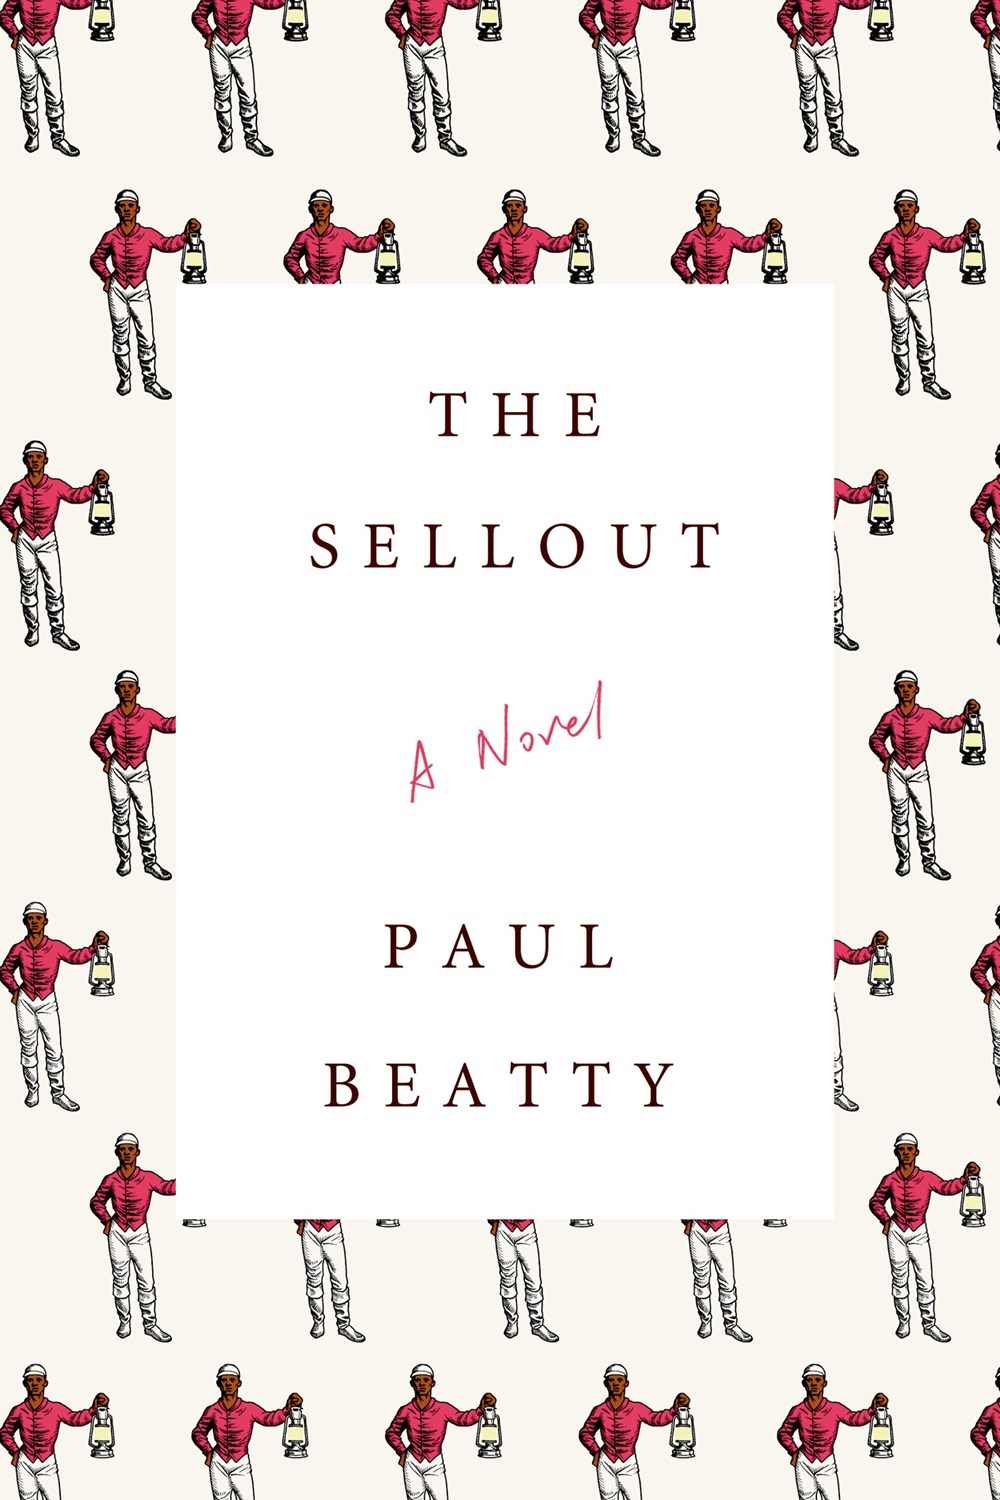 The Sellout, Paul Beatty, Macmillan/FSG